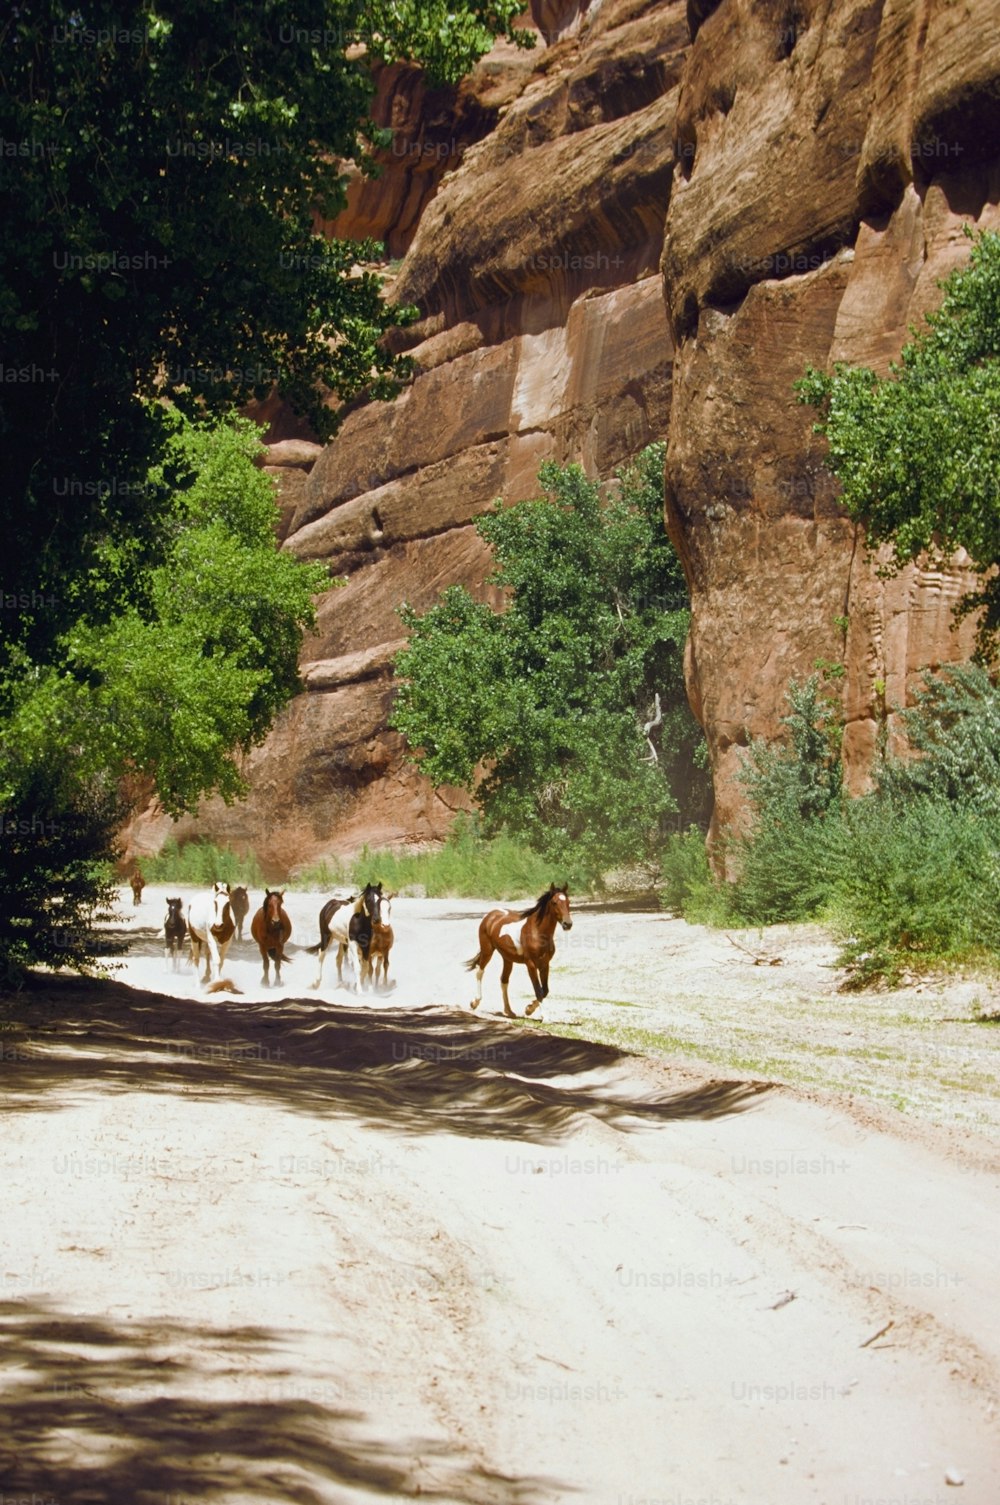 Un groupe de chevaux marchant sur un chemin de terre